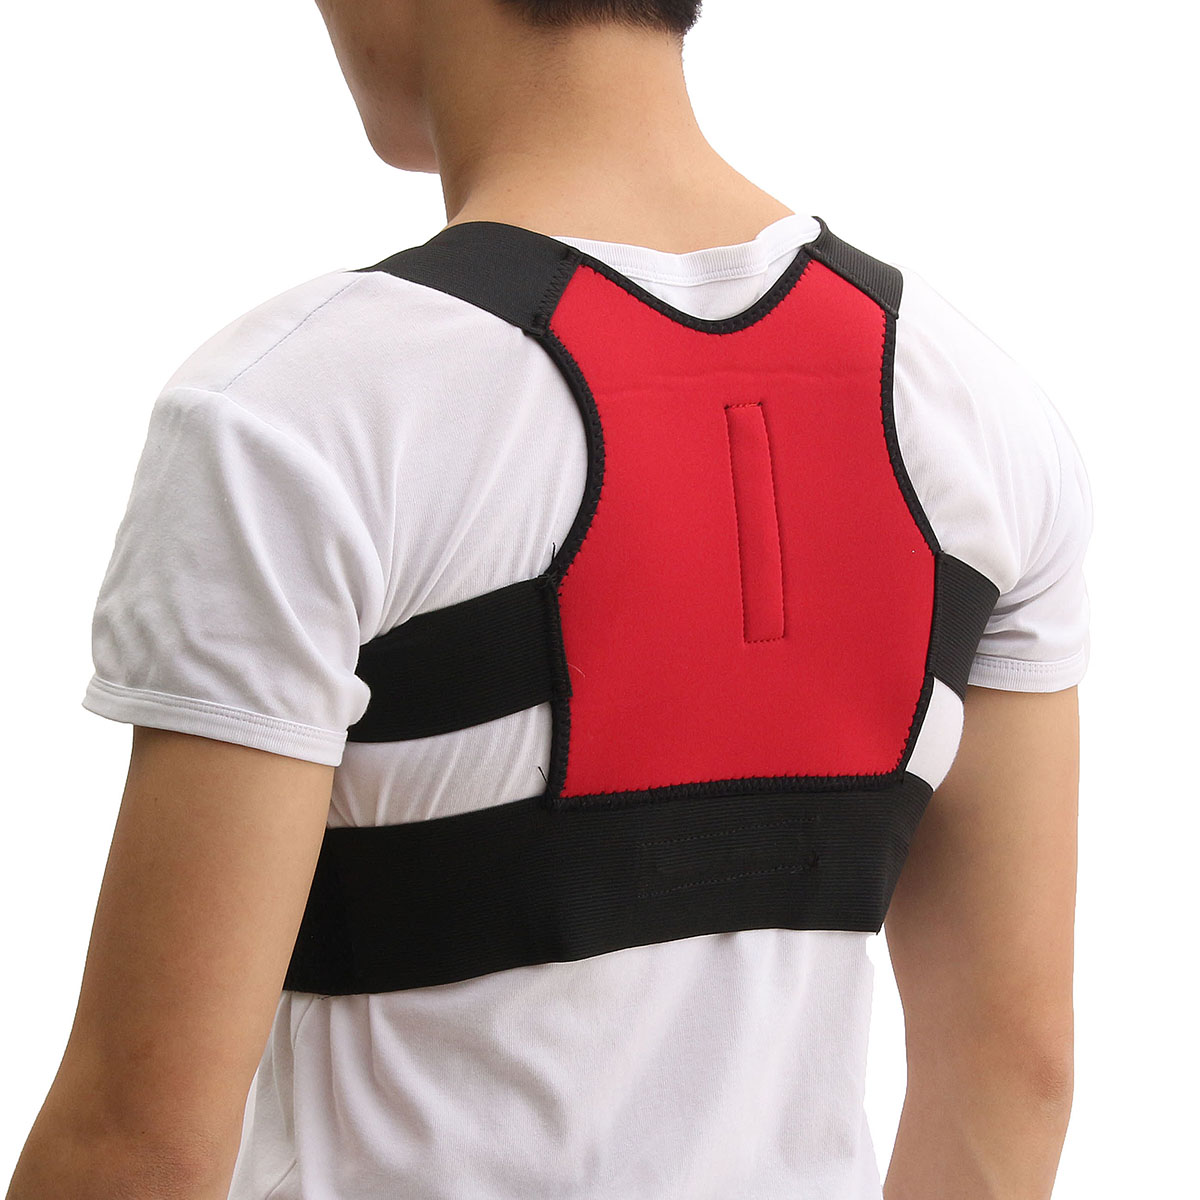 Unisex-Back-Support-Posture-Corrector-Lumbar-Correction-Shoulder-Brace-Belt-1104198